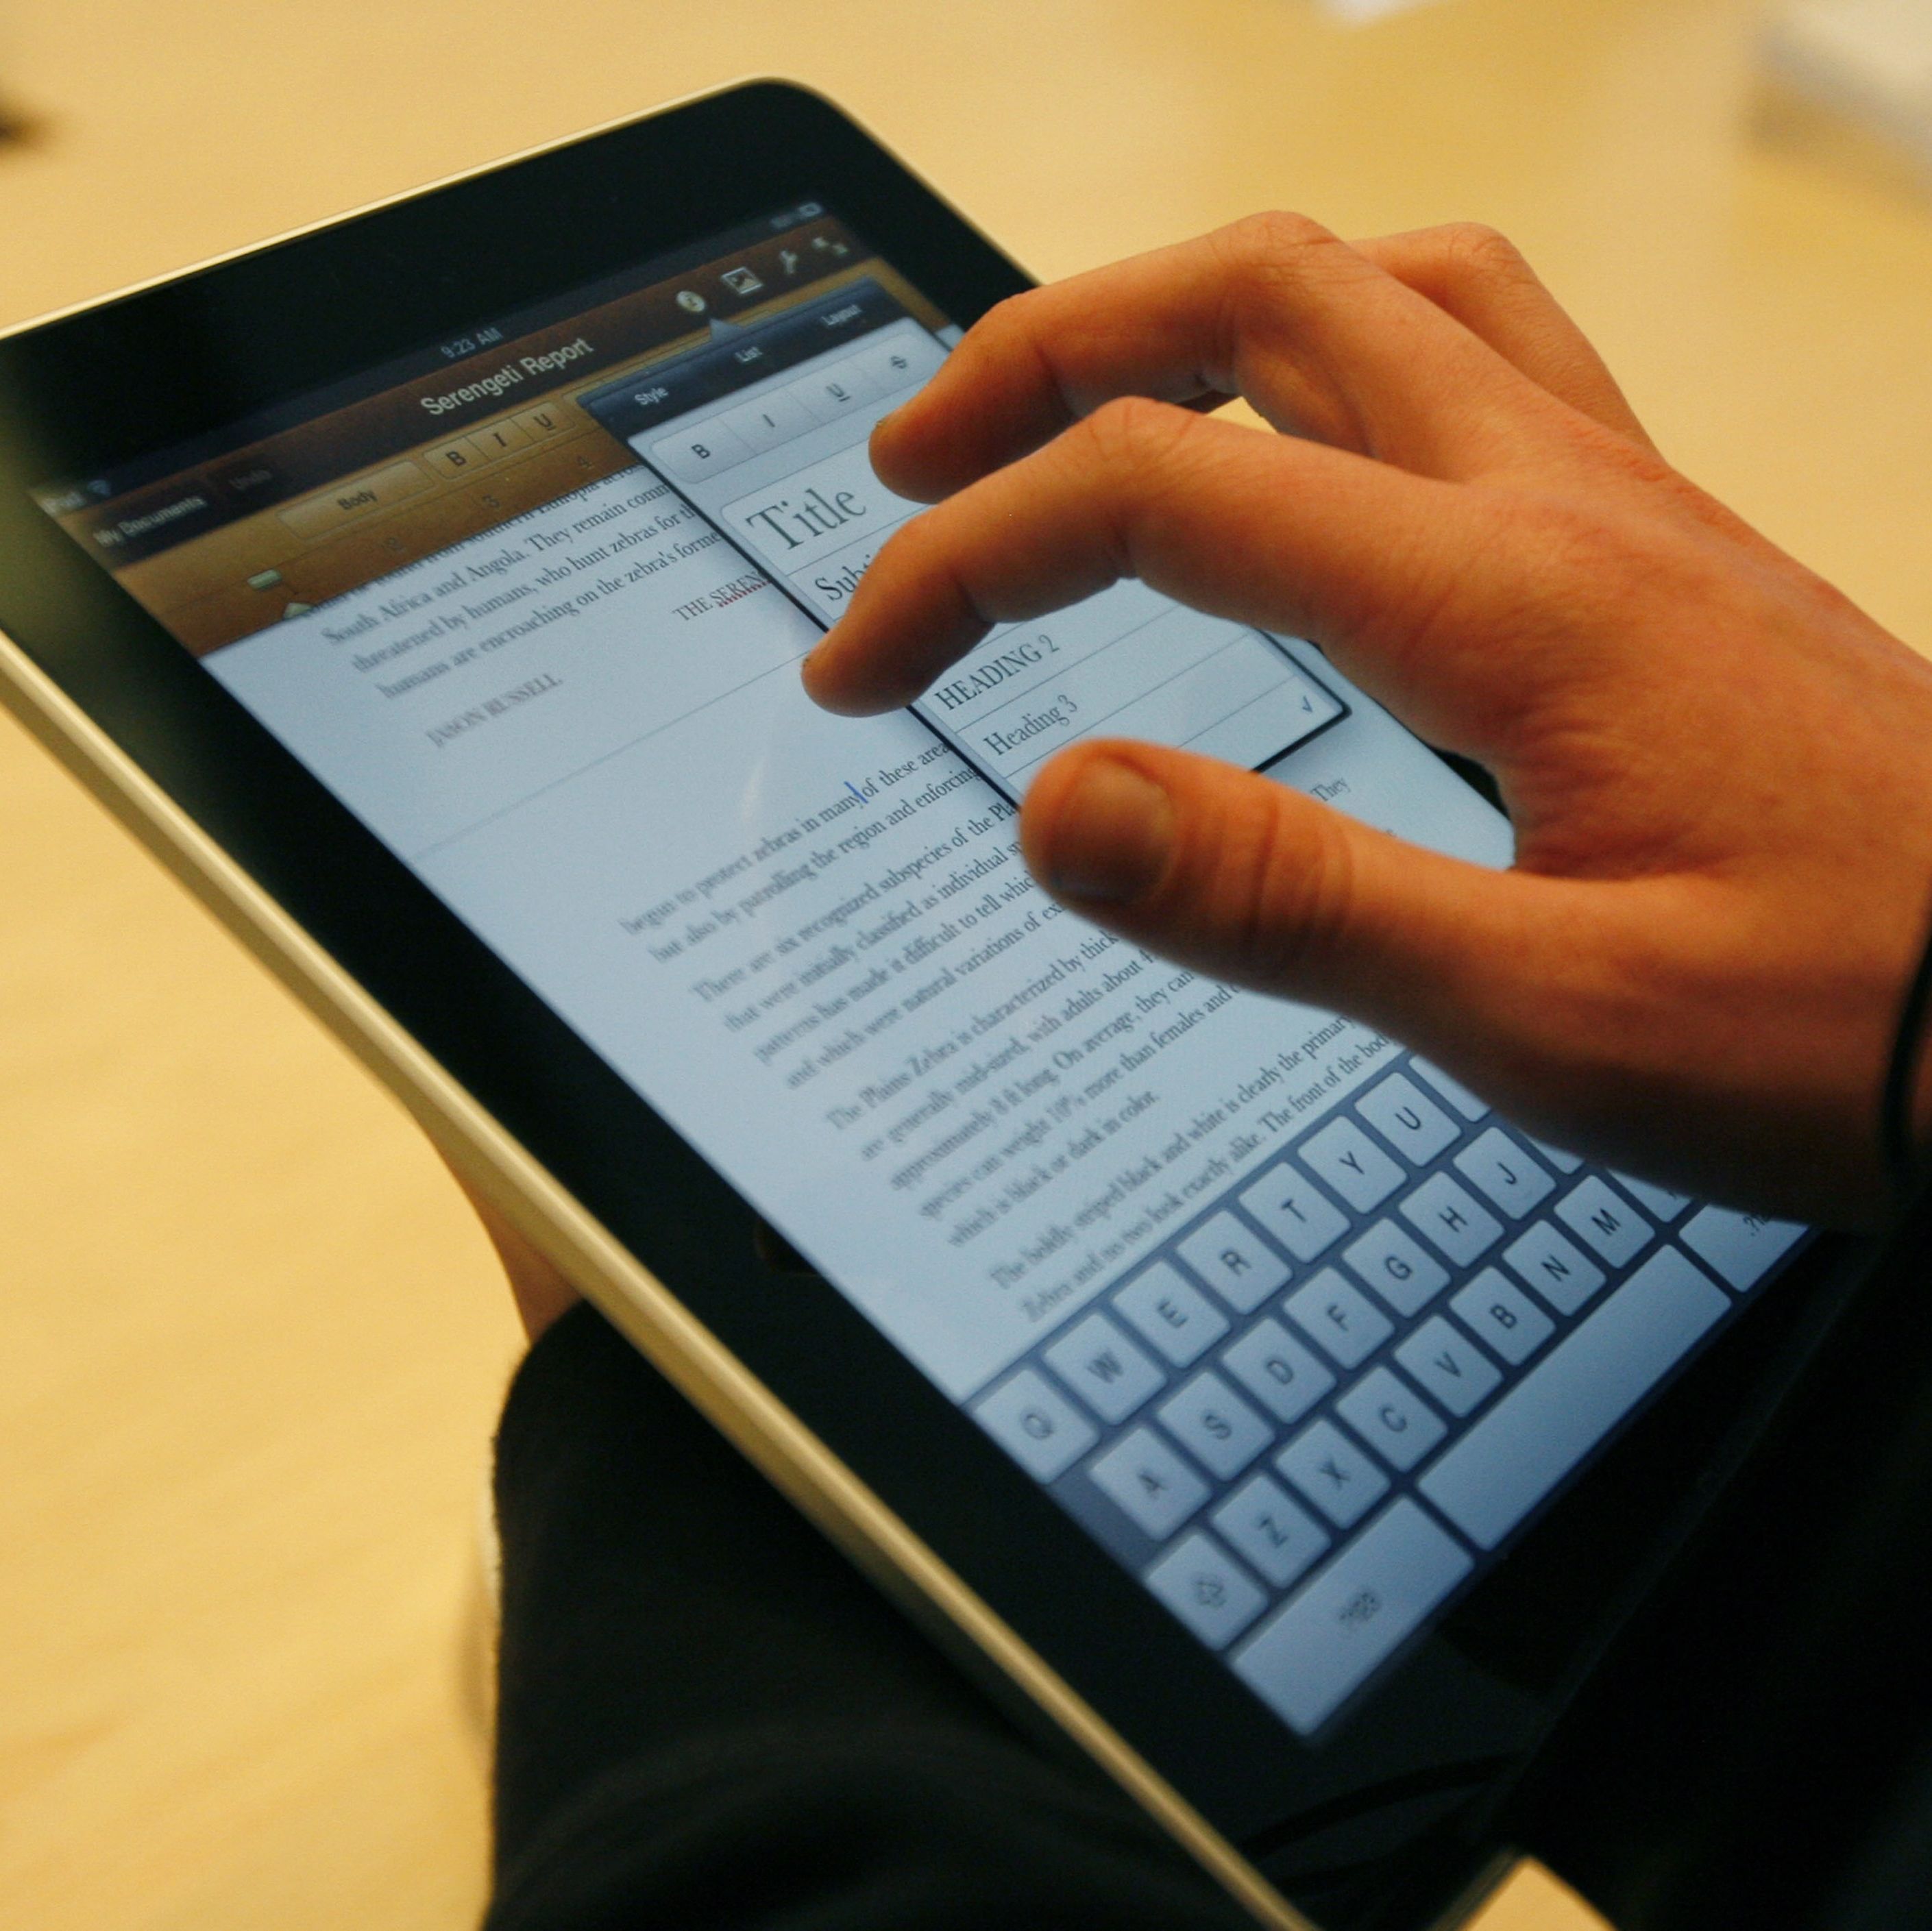 Президентски син влезе в Гинес с iPad